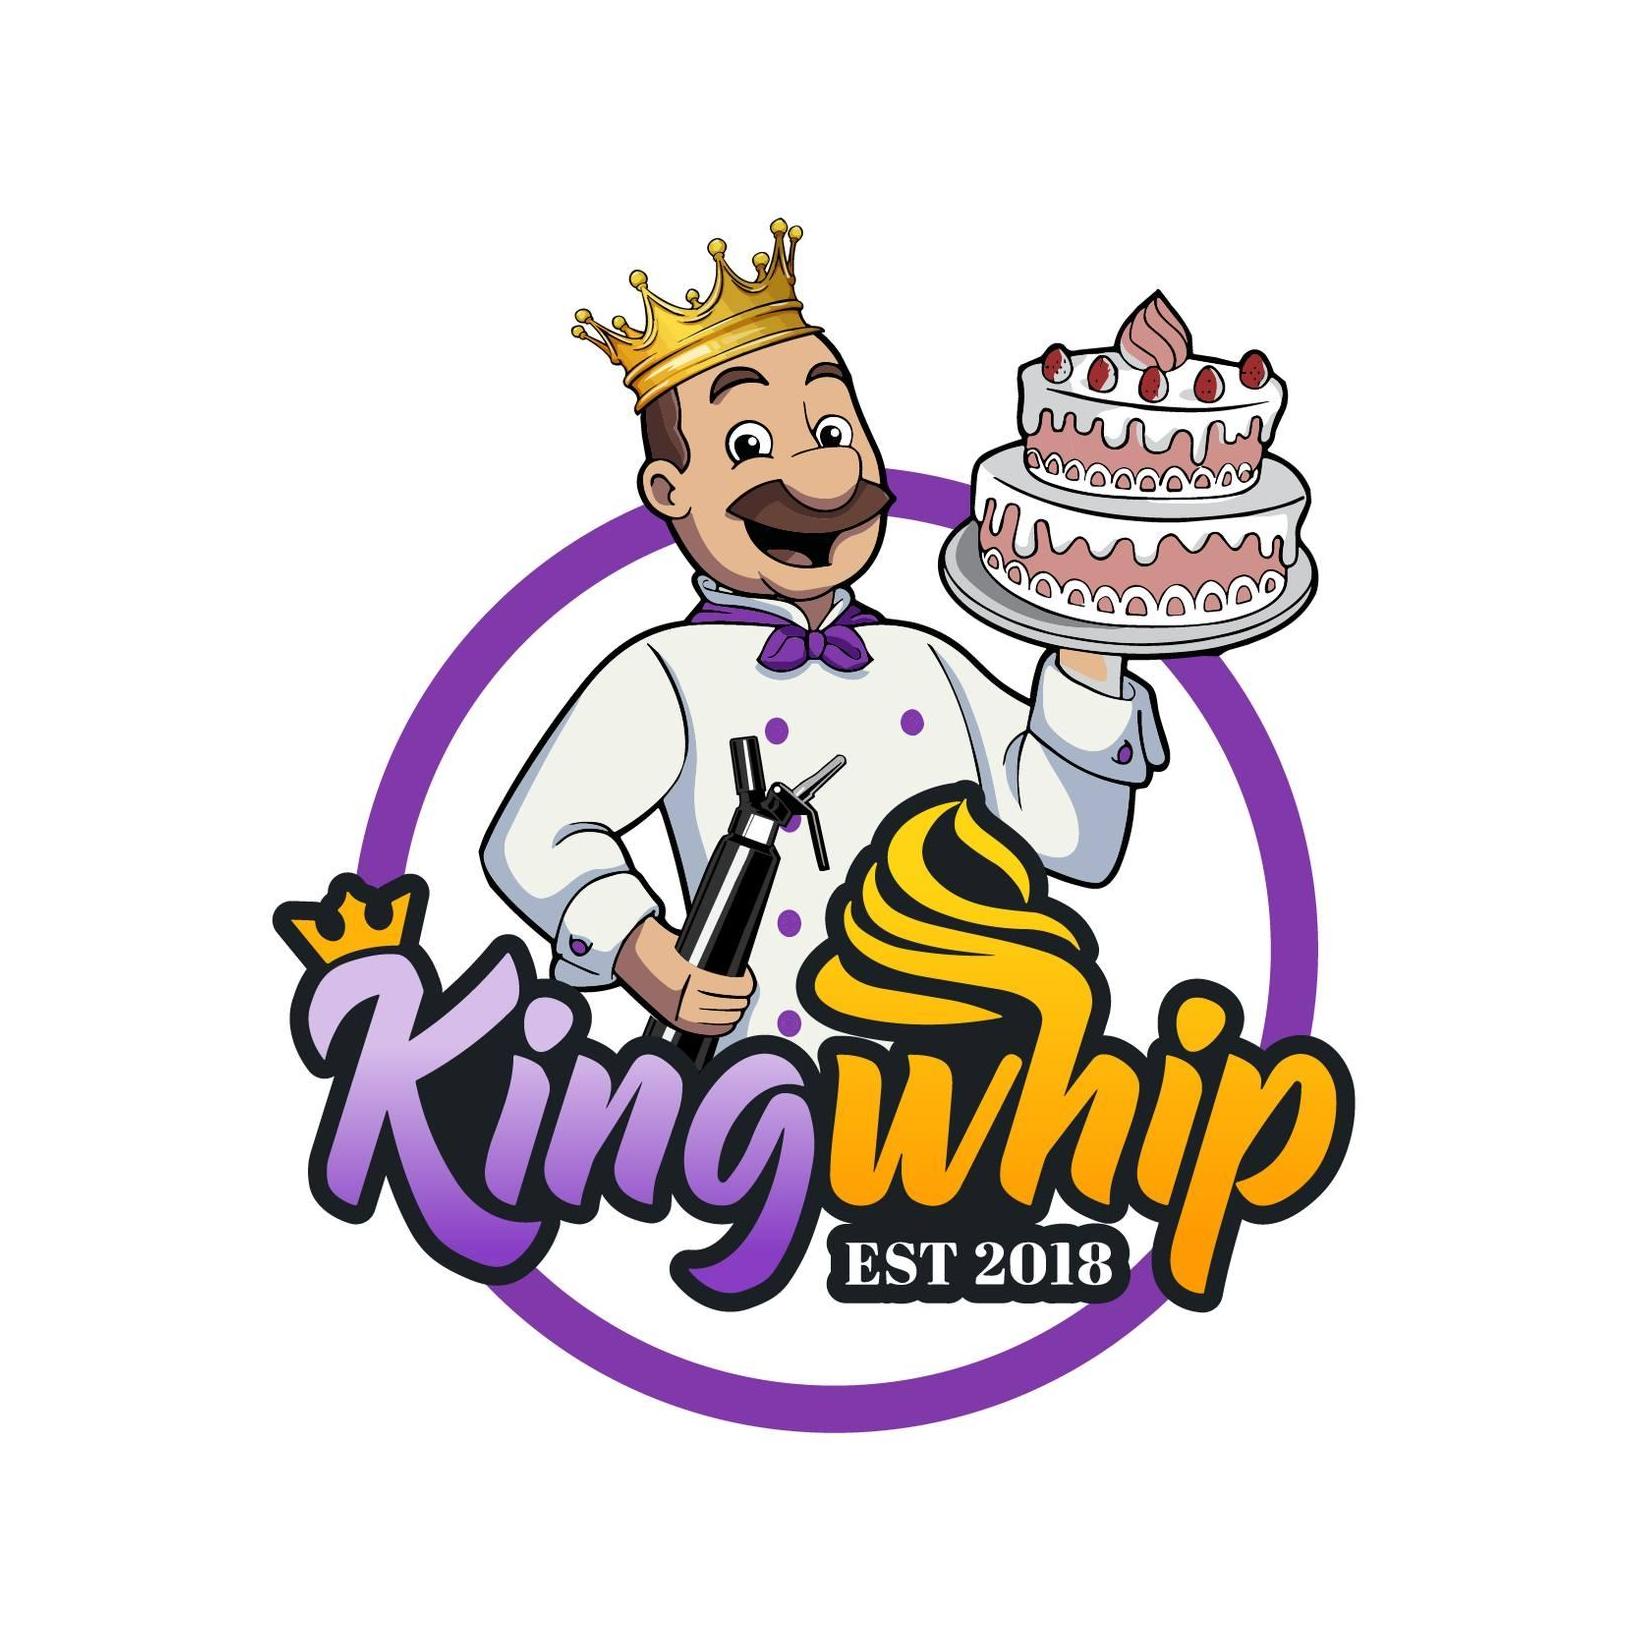 King Whip